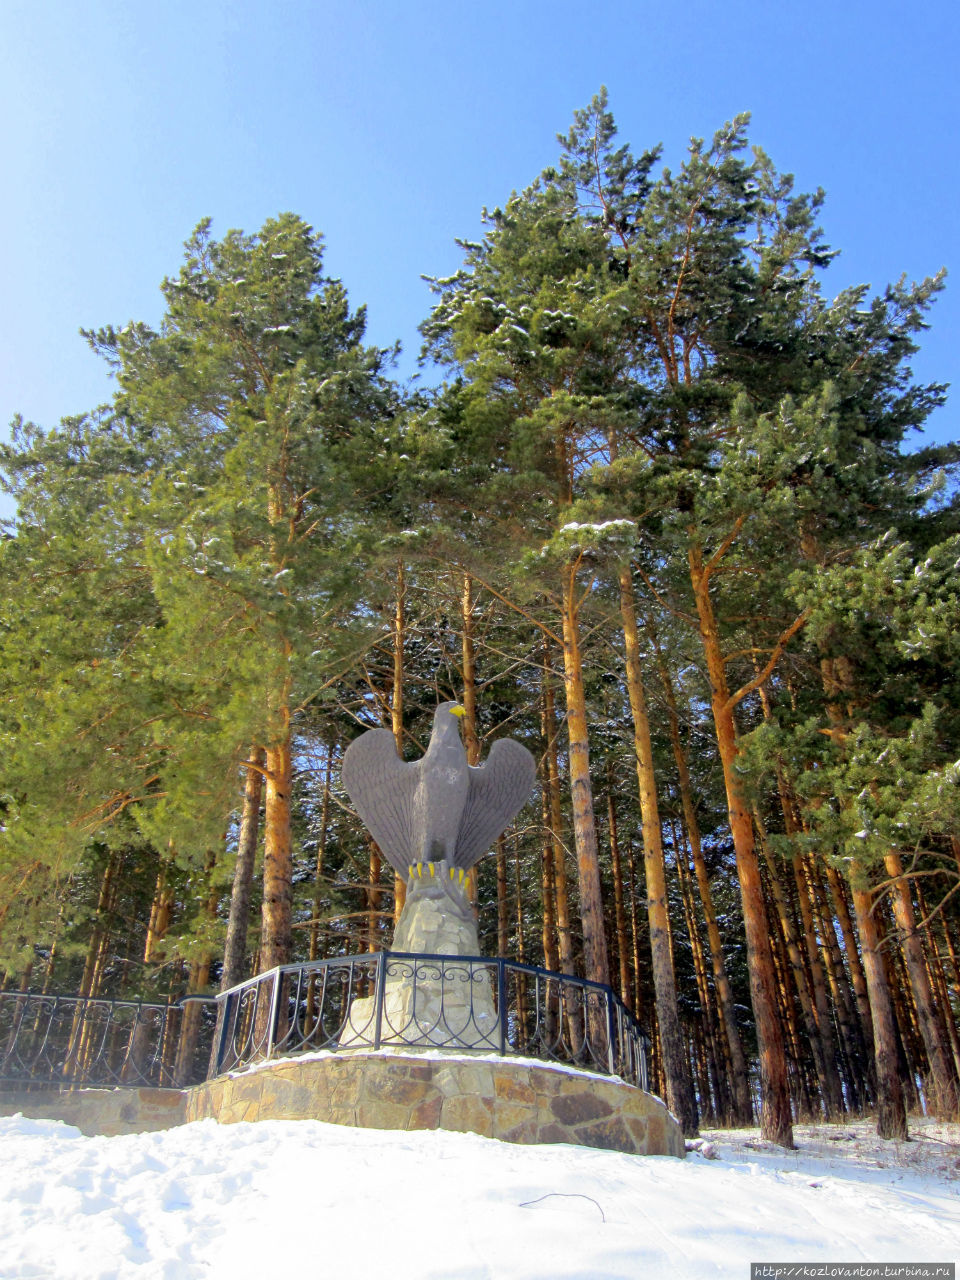 Орел на пригорке у санатория Белокуриха — одно из наиболее фотографируемых мест. Белокуриха, Россия